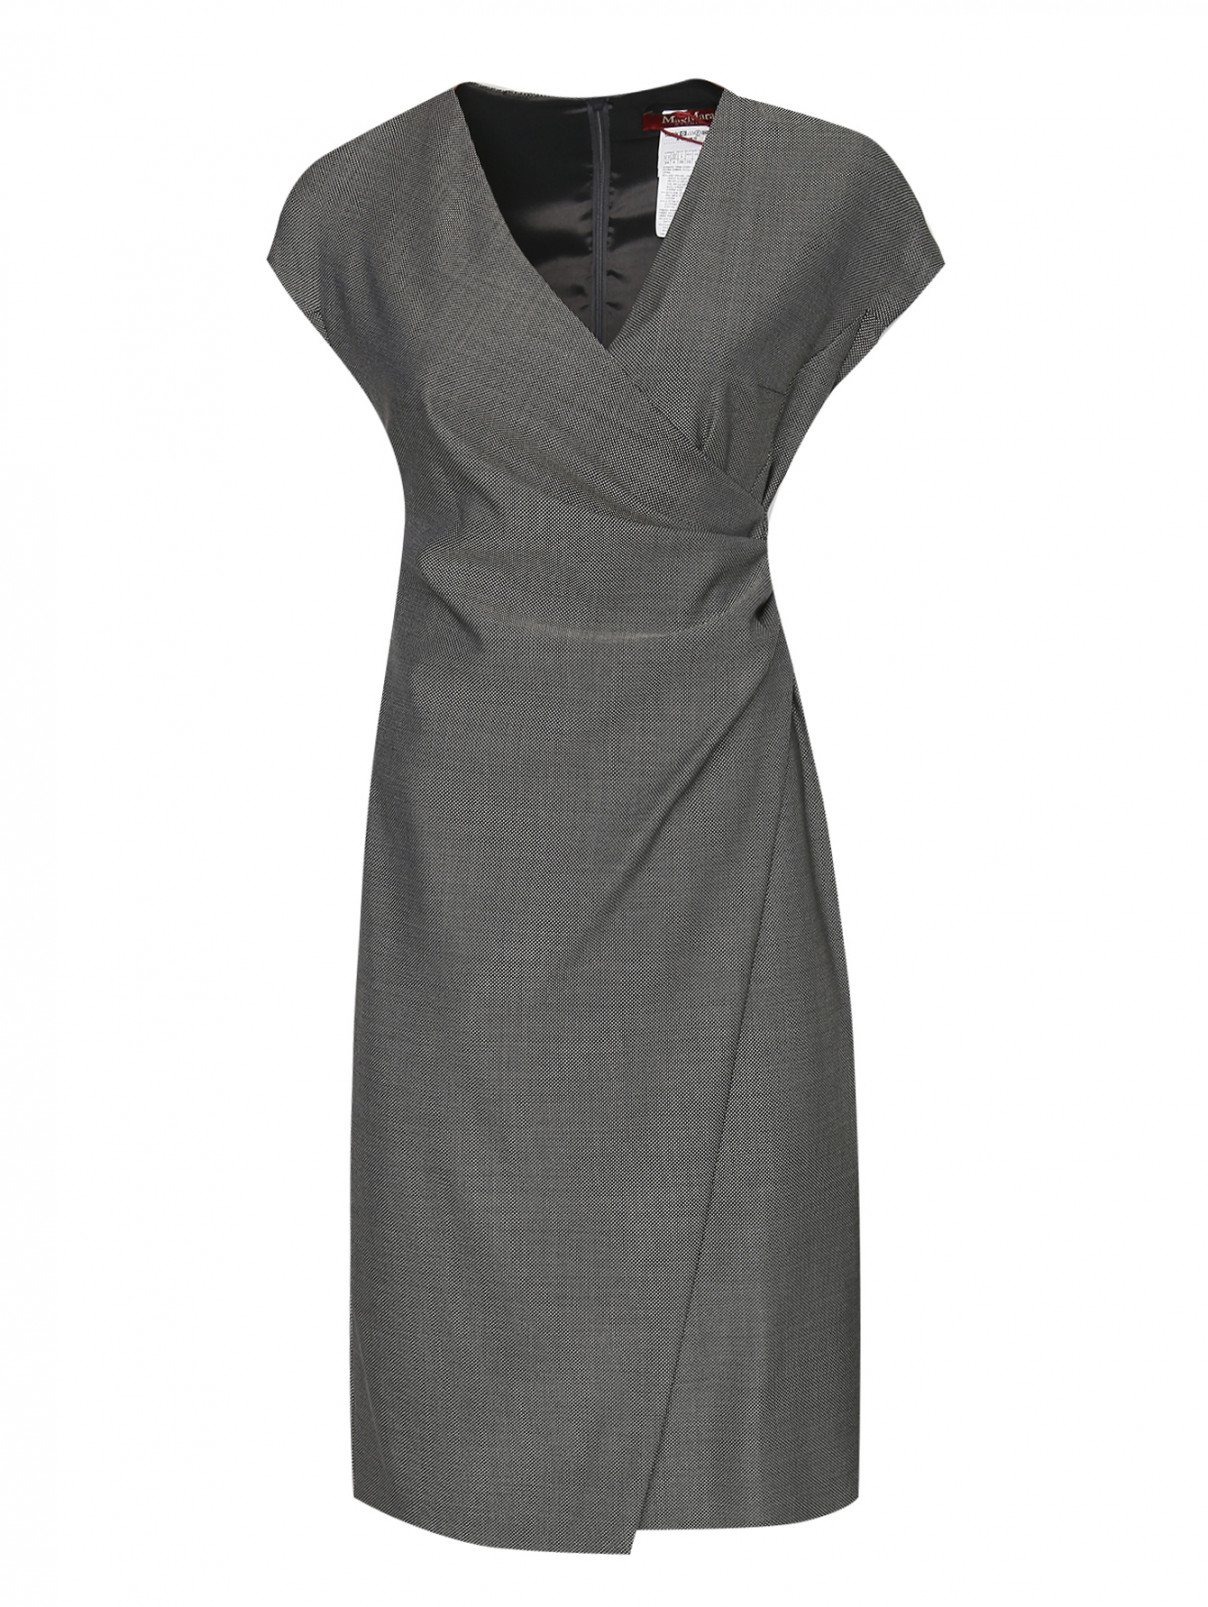 Платье из шерсти и шелка Max Mara  –  Общий вид  – Цвет:  Серый